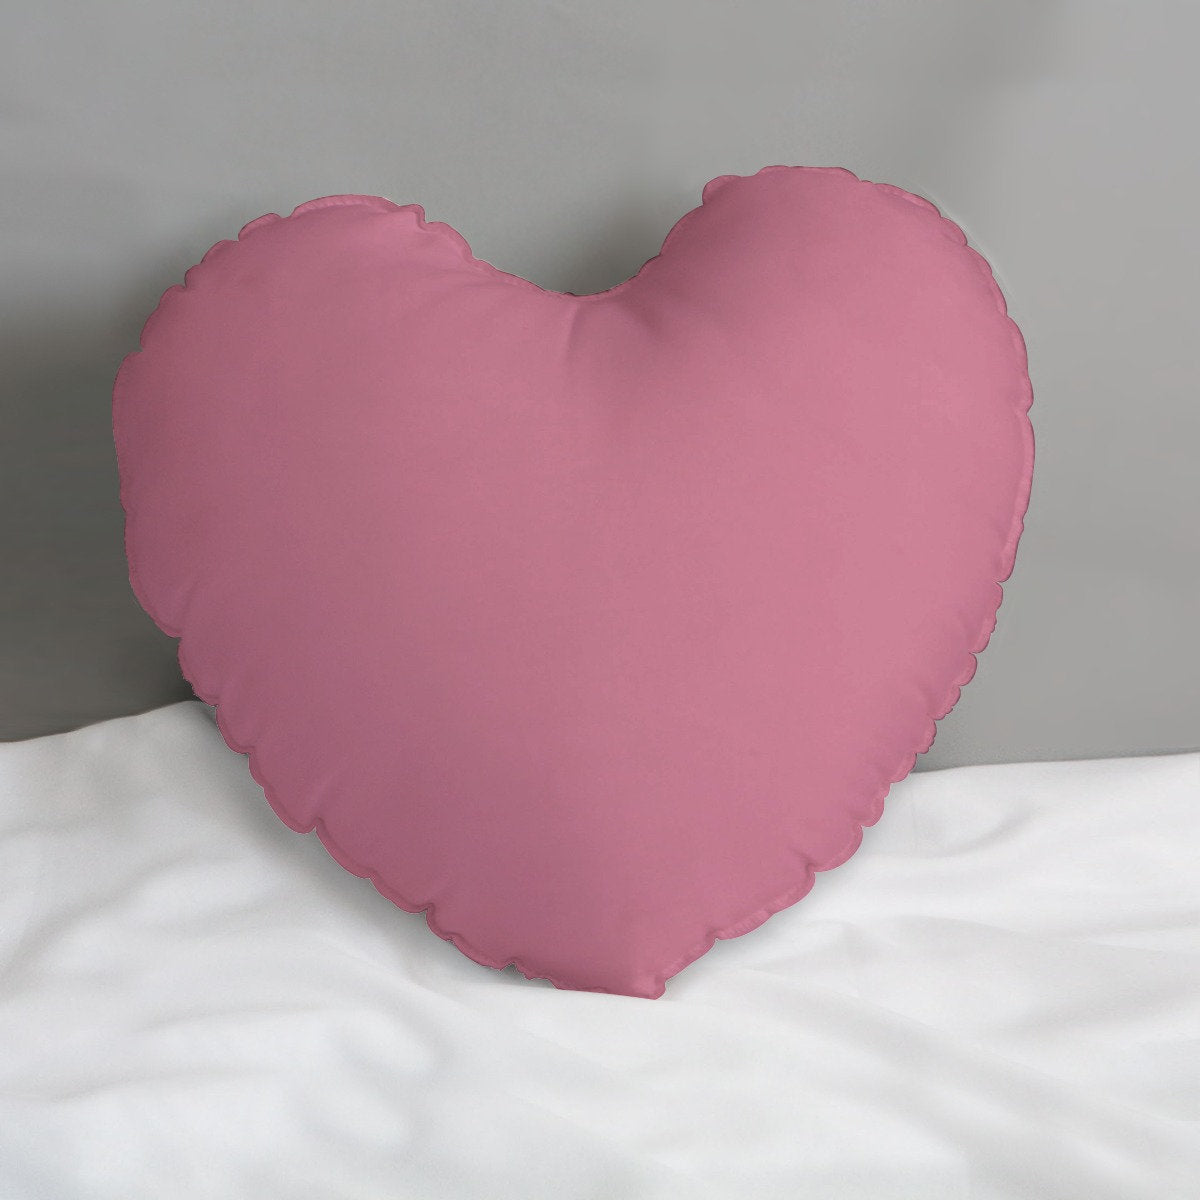 Heart Pillow, Custom Text Heart Pillow, Pop Art Pillow, Heart Shaped Pillow, Decorative Pillow, Pink Pillow, Custom Pillow, Accent Pillow